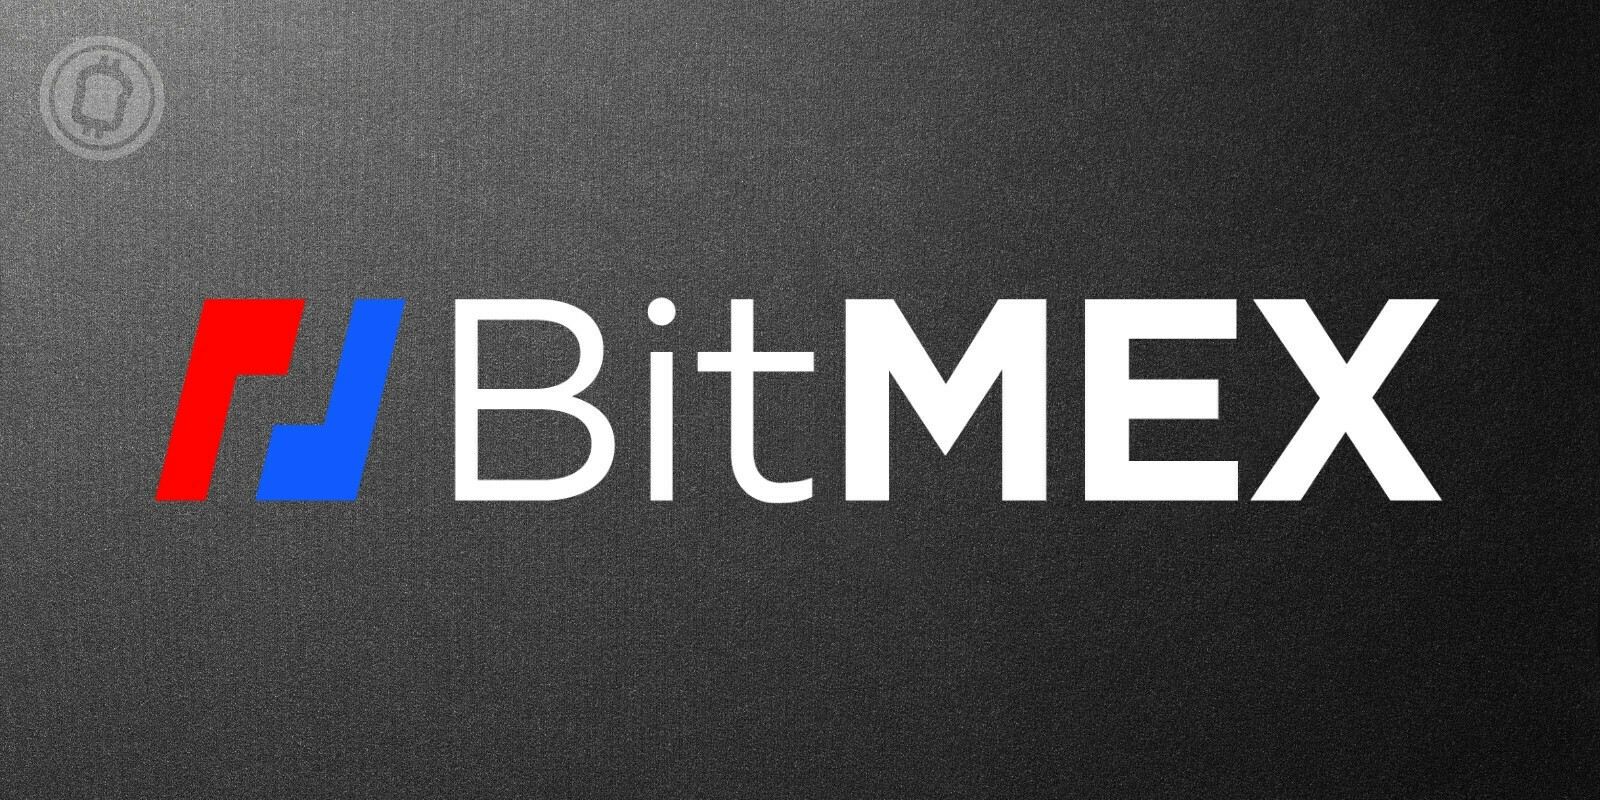 Les fondateurs de BitMEX reconnaissent avoir enfreint la loi sur le secret bancaire et paient une amende de 30 millions de dollars